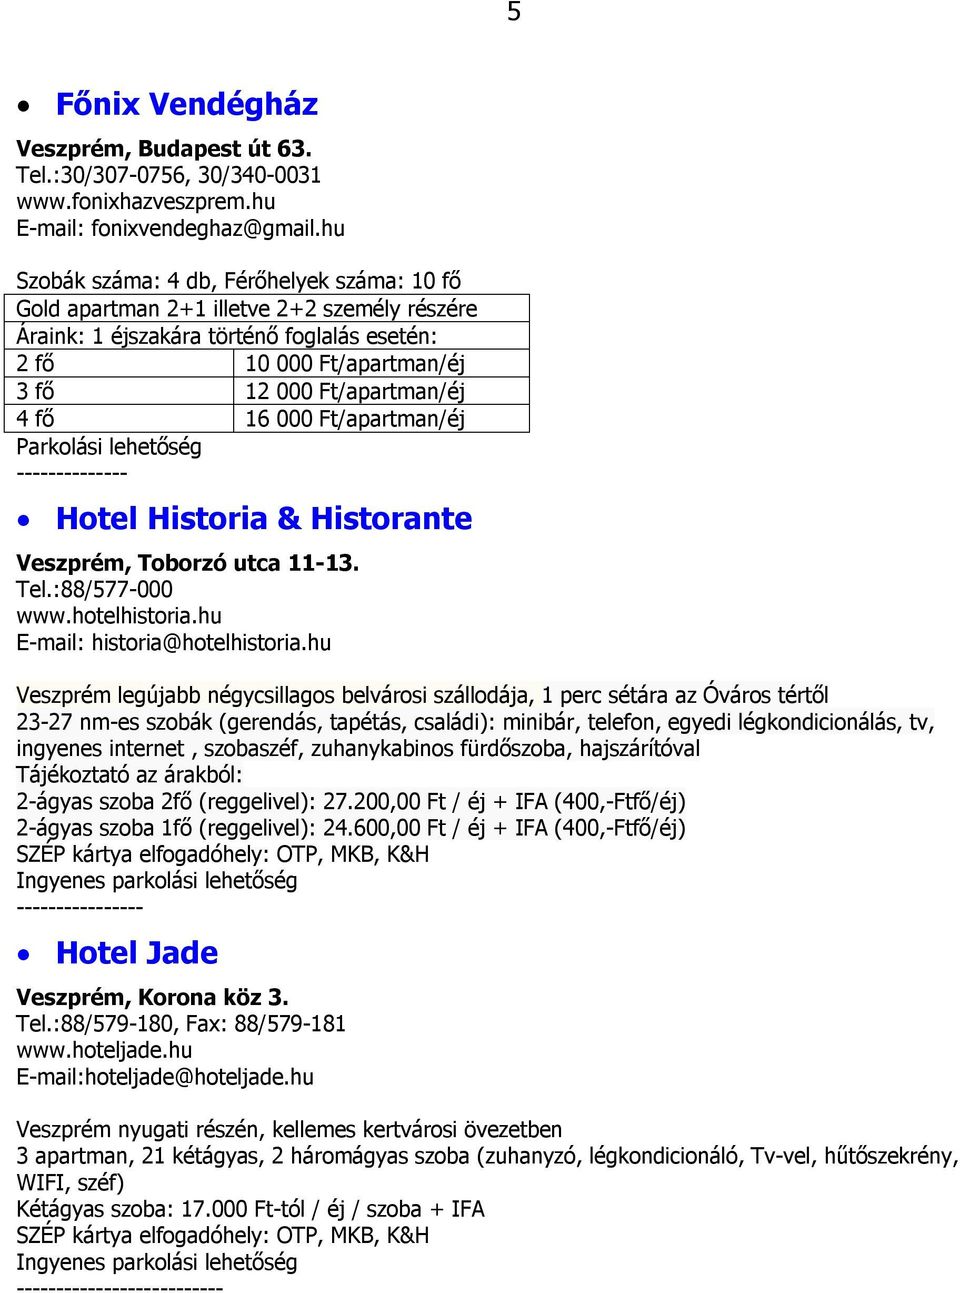 000 Ft/apartman/éj Parkolási lehetőség -------------- Hotel Historia & Historante Veszprém, Toborzó utca 11-13. Tel.:88/577-000 www.hotelhistoria.hu E-mail: historia@hotelhistoria.